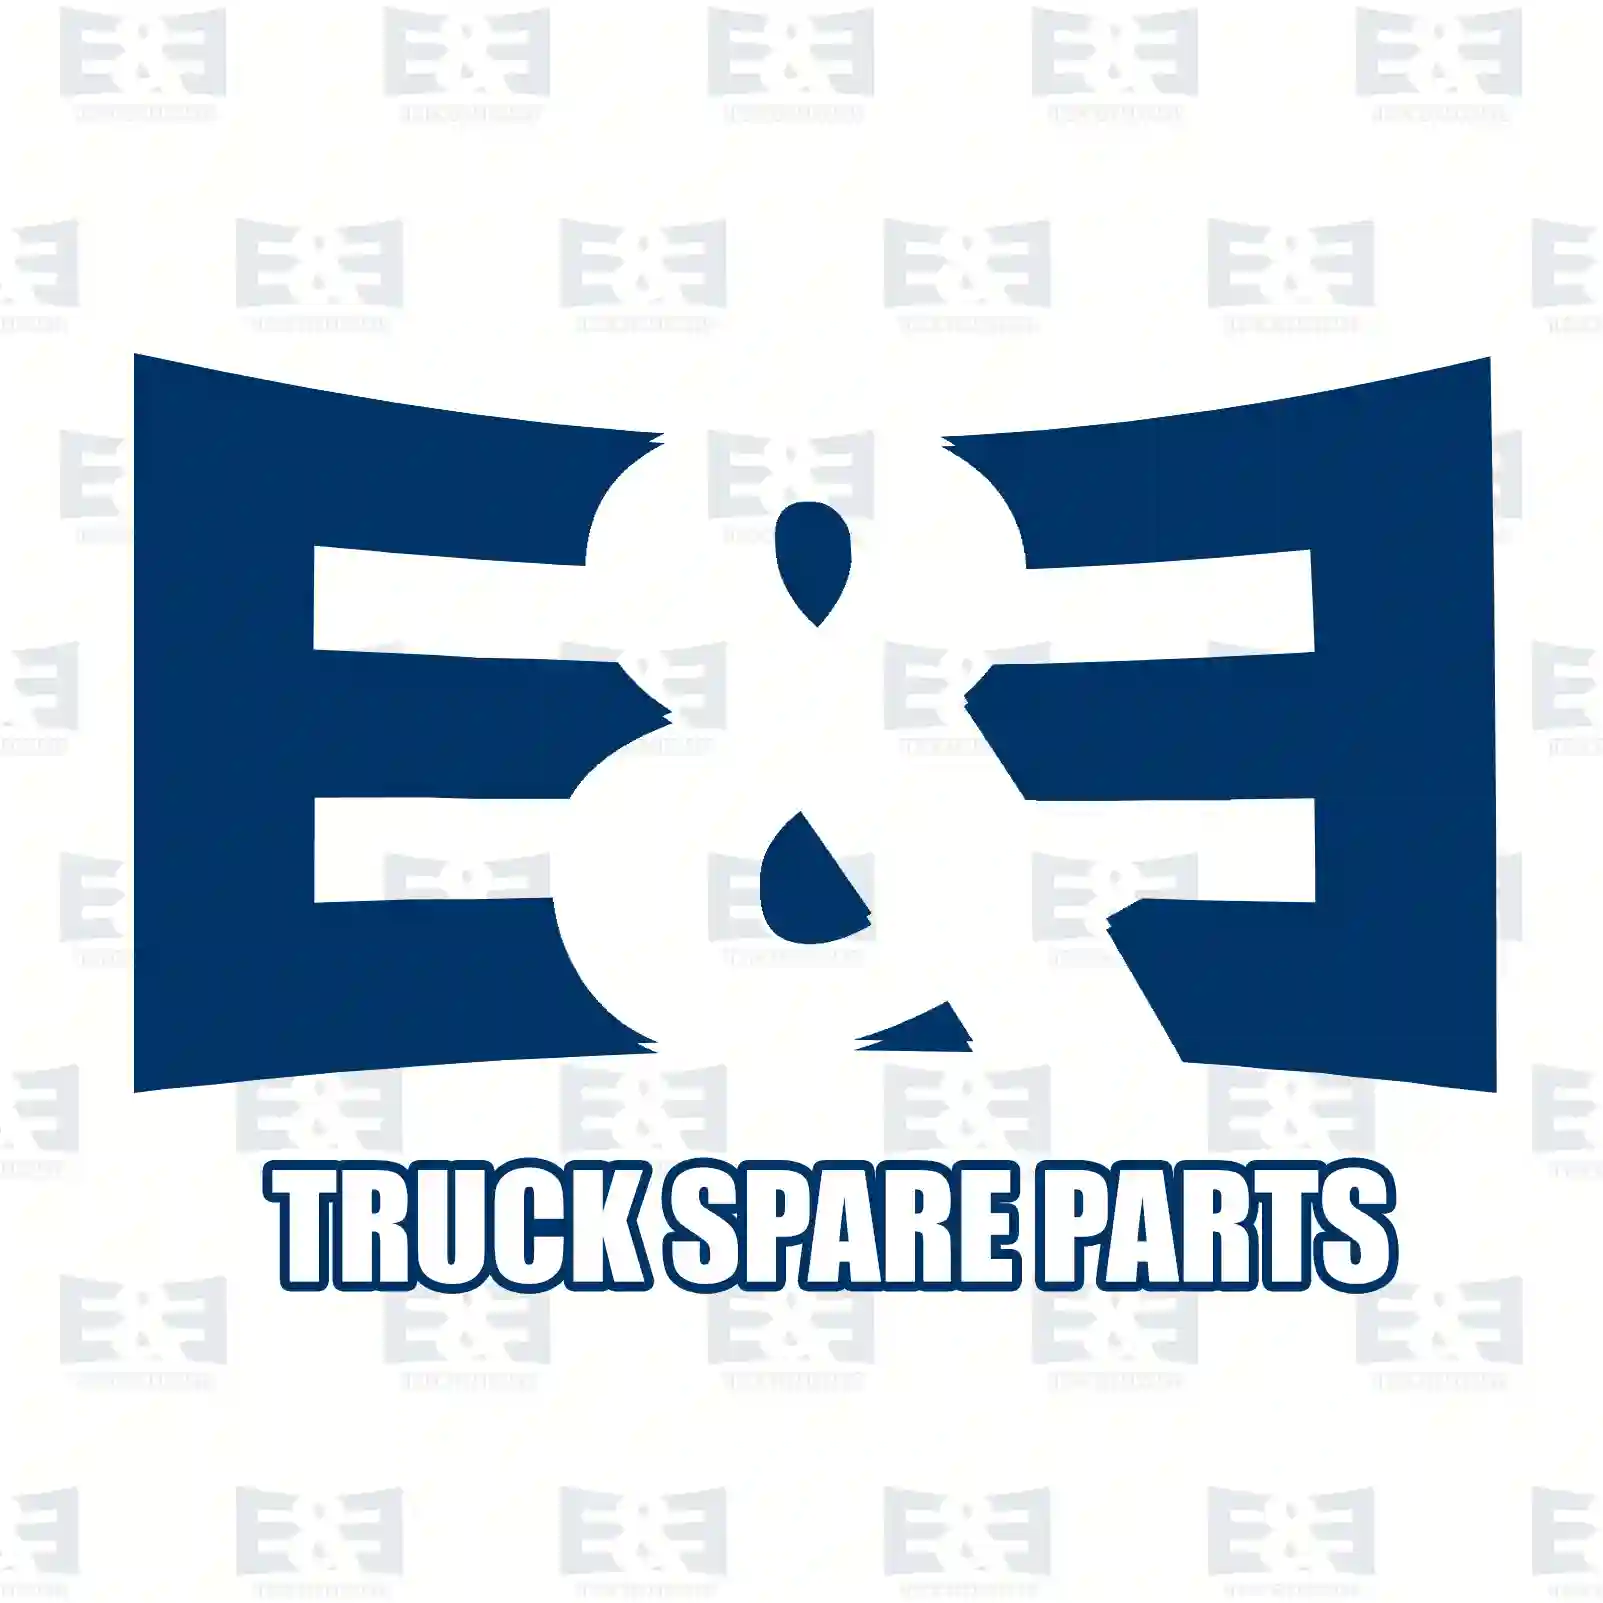 Push-in-connector, 2E2285568, ZG50587-0008 ||  2E2285568 E&E Truck Spare Parts | Truck Spare Parts, Auotomotive Spare Parts Push-in-connector, 2E2285568, ZG50587-0008 ||  2E2285568 E&E Truck Spare Parts | Truck Spare Parts, Auotomotive Spare Parts